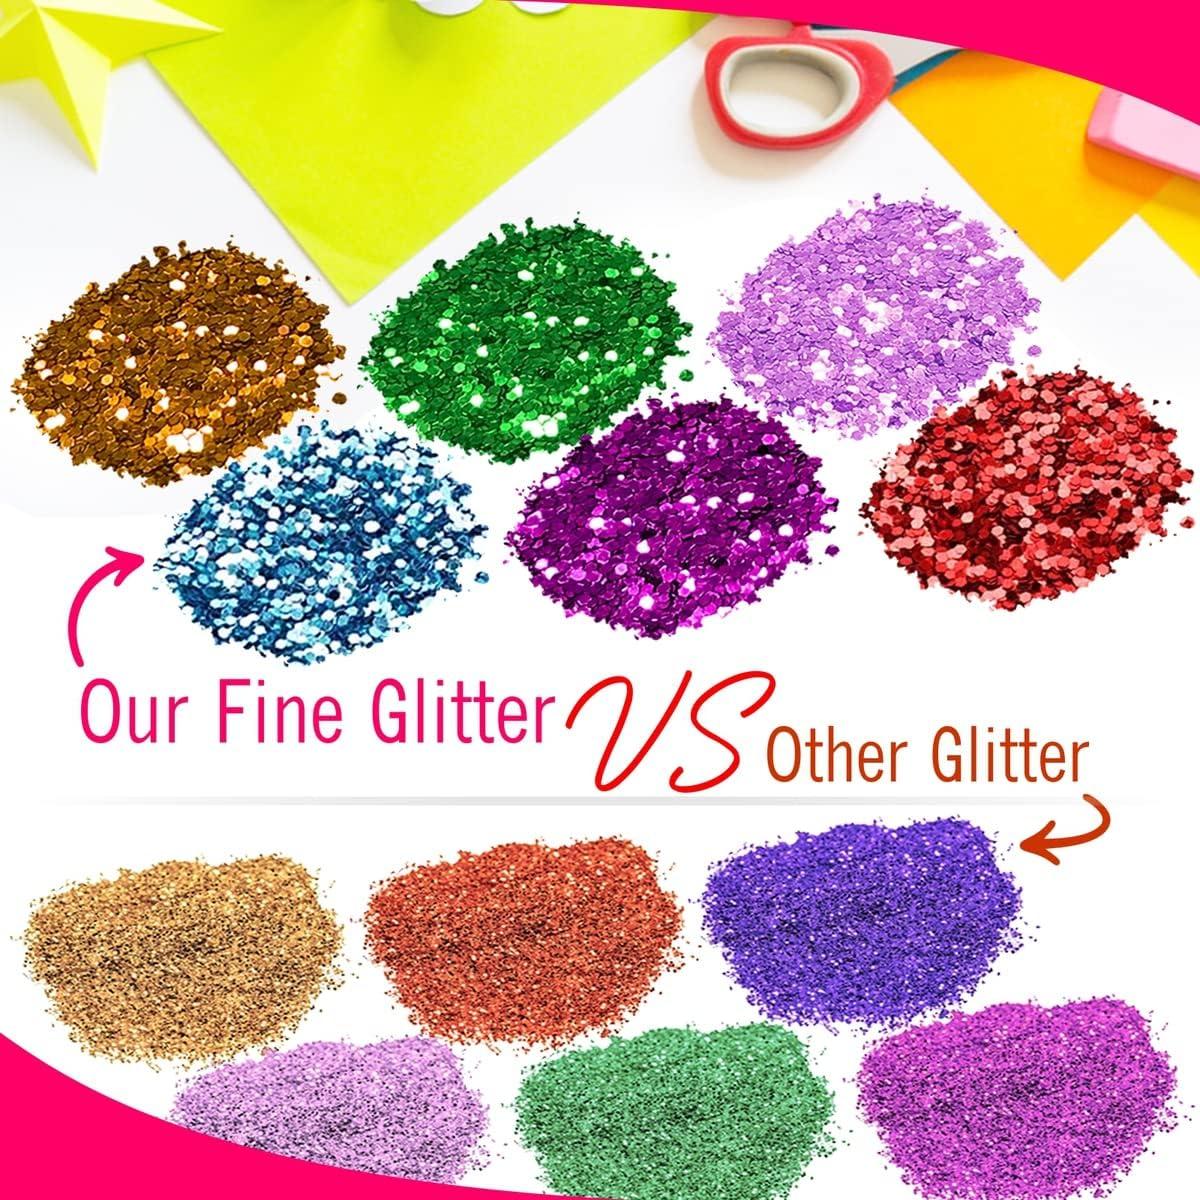 Glitter in Basic Craft Supplies